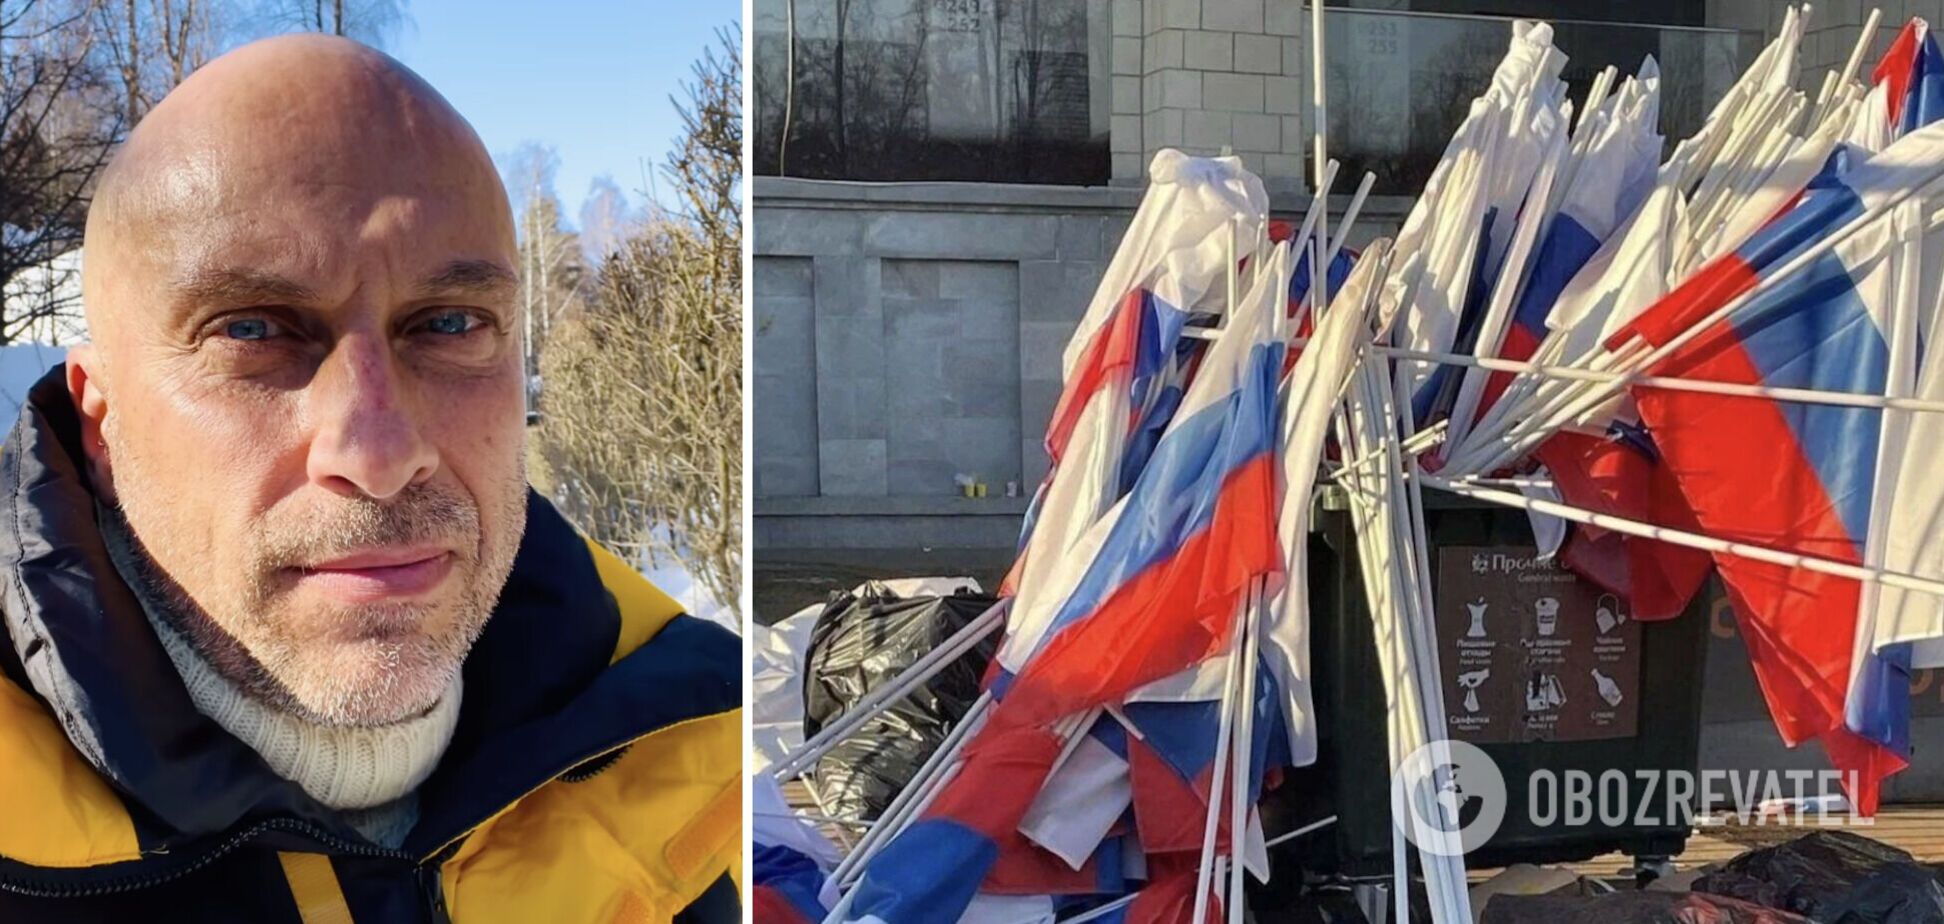 Нагиев в сине-желтой куртке разозлил путинистов: молчаливое видео уже сутки обсуждают в росСМИ